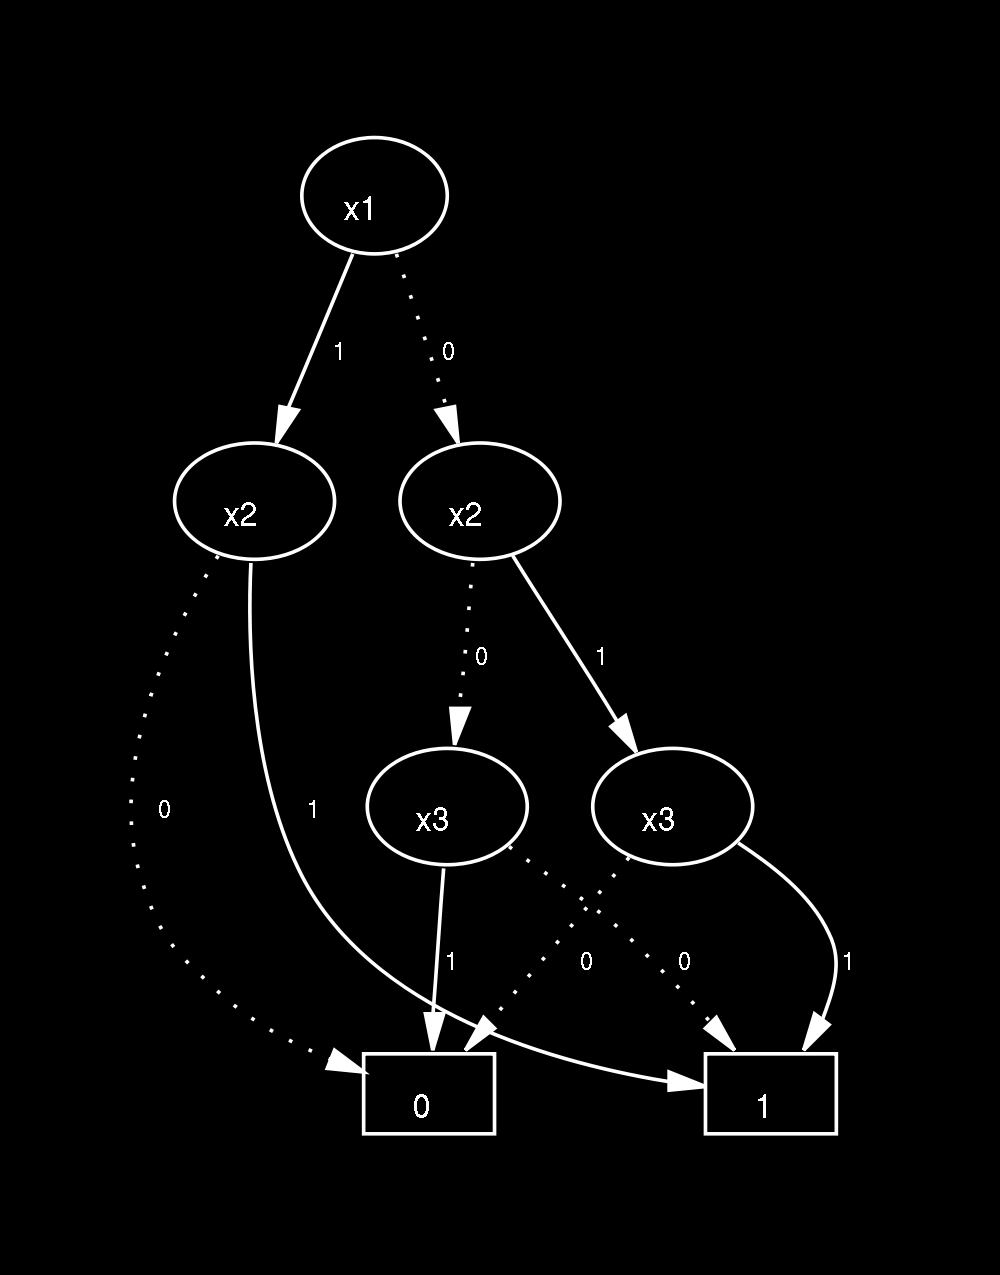 Construire le bloc diagramme associé ainsi que l arbre de défaillance. En déduire les coupes minimales et leur probabilité. 3.3 Codage des arbres de défaillance sous forme de DDB En 1992, J.-C.